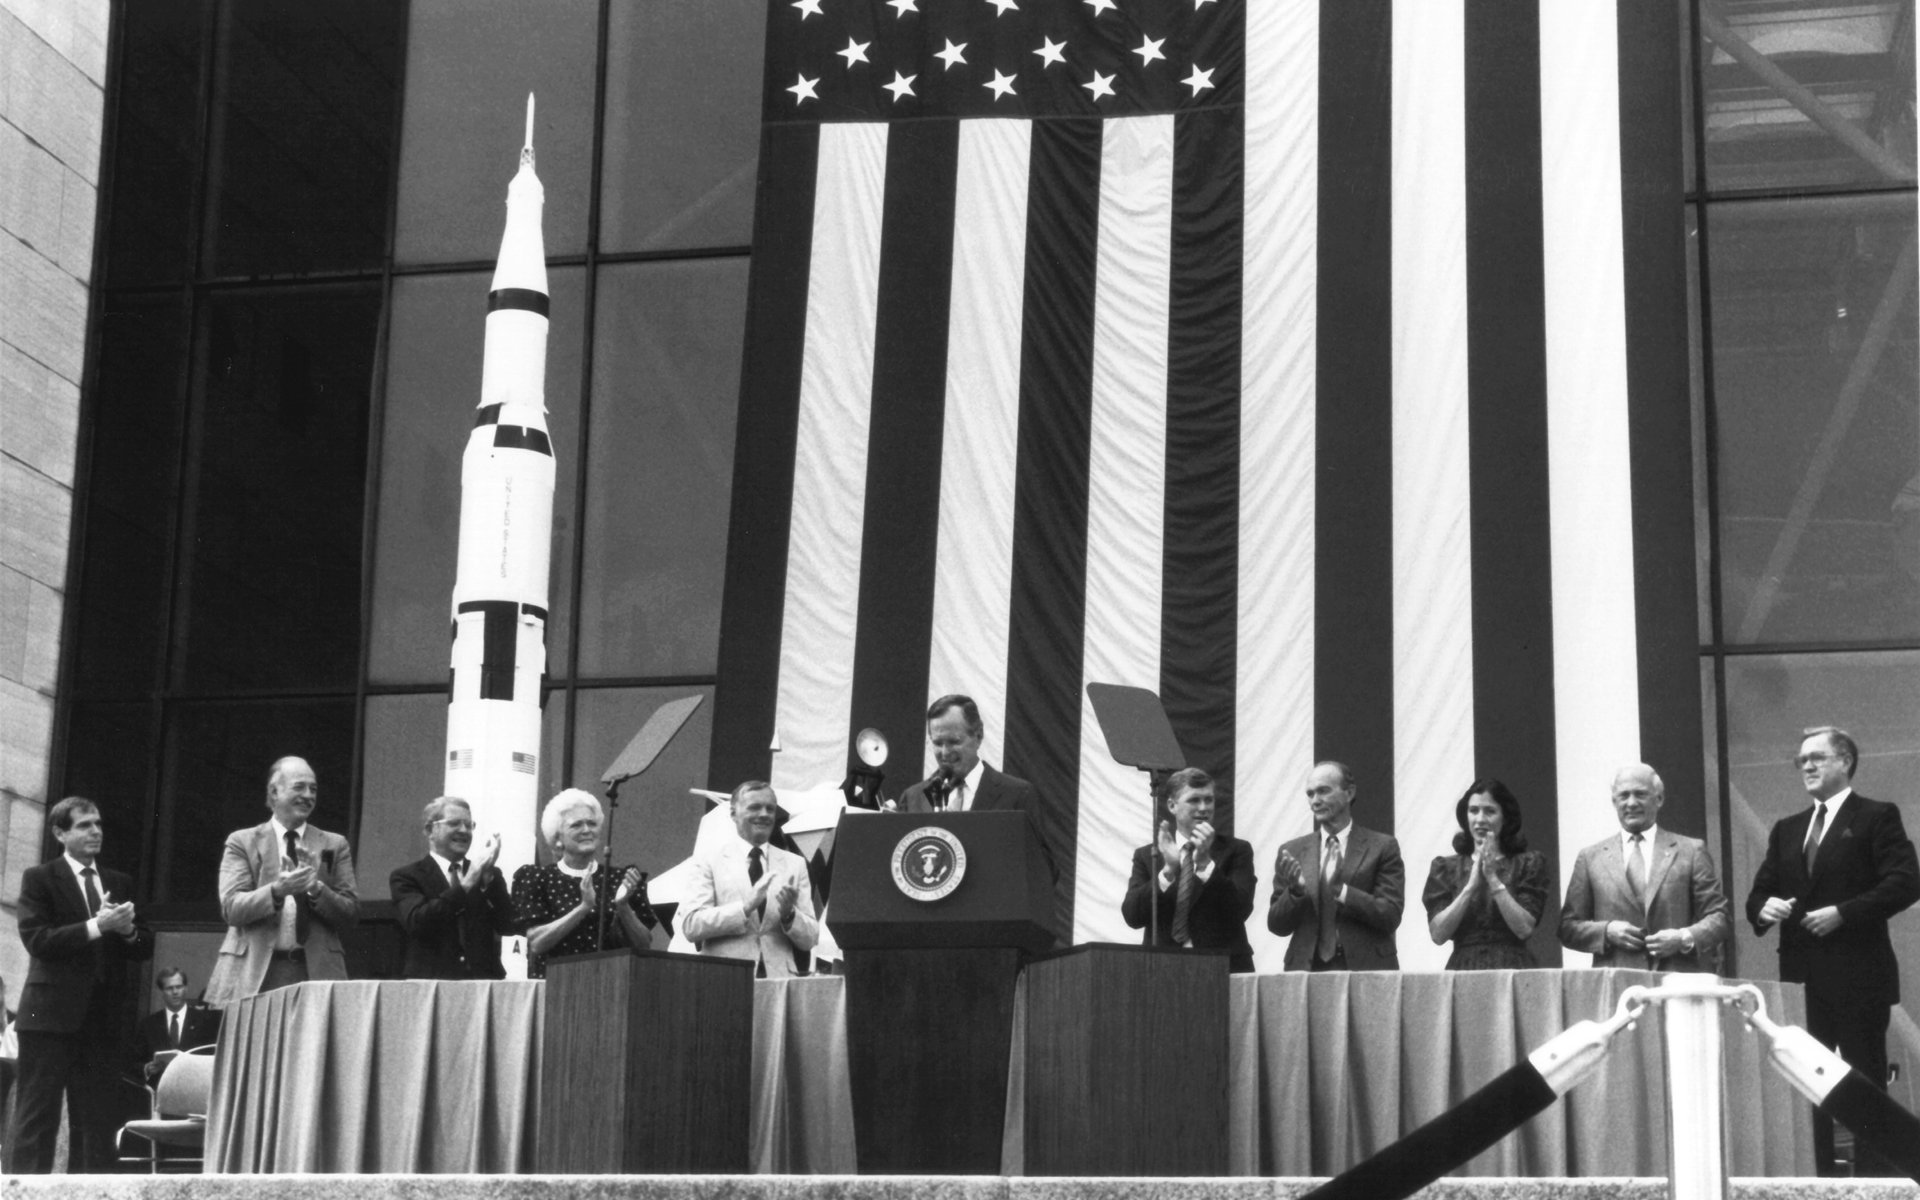 壁纸1920x1200One Giant Leap for Mankind  President George Bush and Apollo 11 Astronauts 1989年老布什总统和登月英雄壁纸 阿波罗11号登月40周年纪念壁纸壁纸 阿波罗11号登月40周年纪念壁纸图片 阿波罗11号登月40周年纪念壁纸素材 人文壁纸 人文图库 人文图片素材桌面壁纸